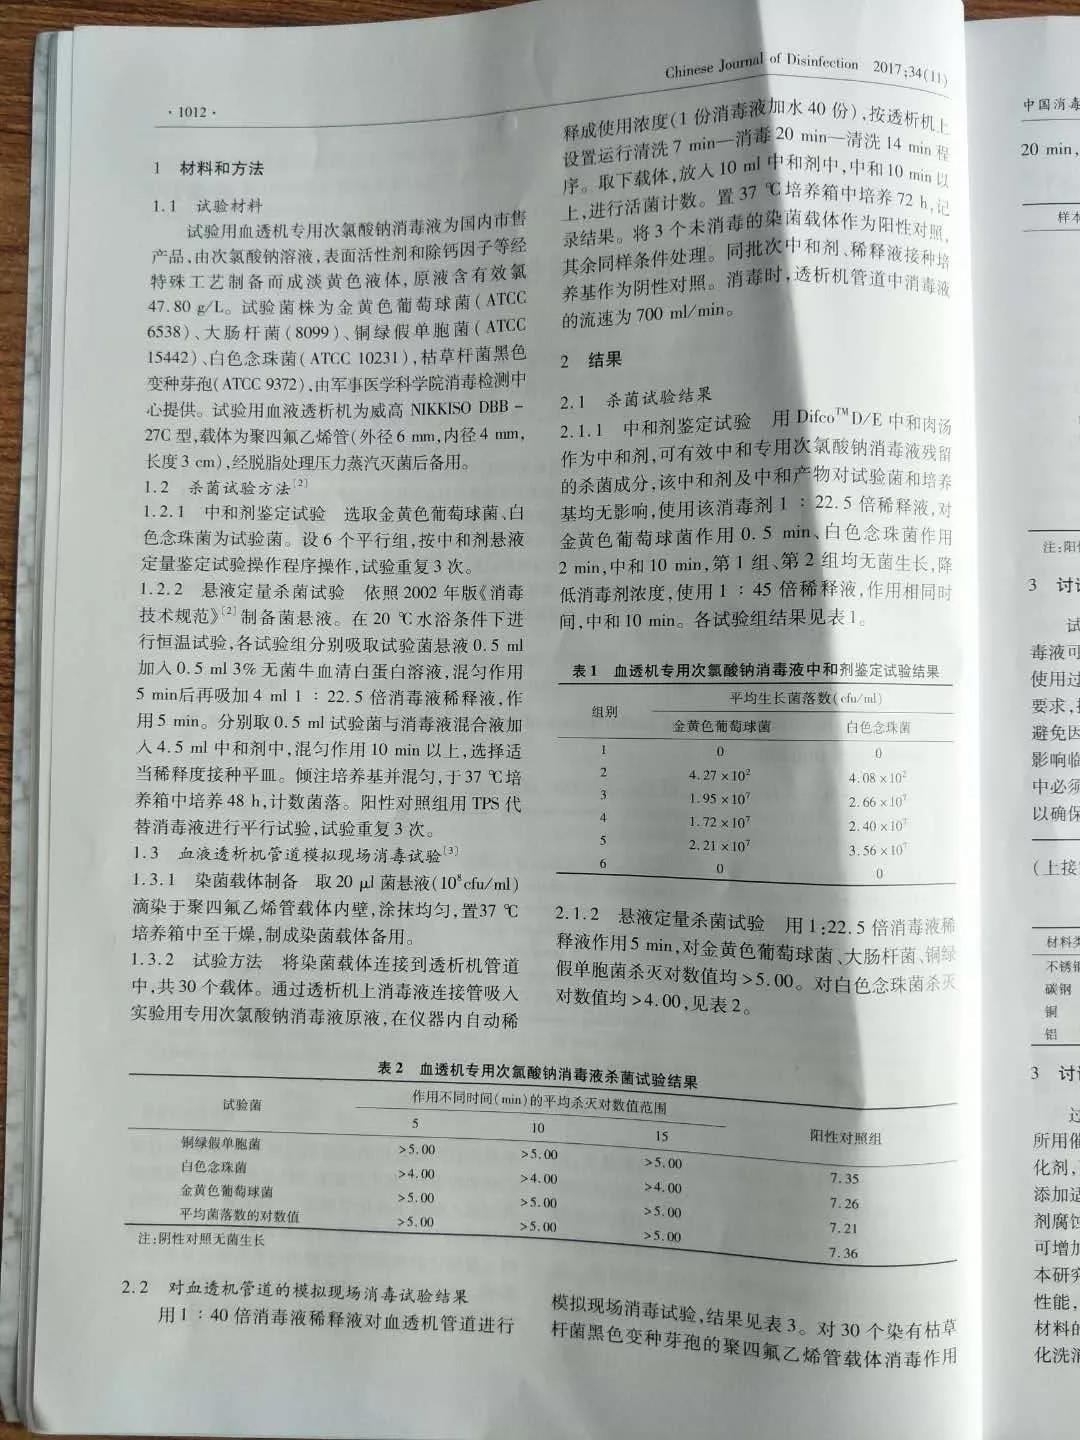 祝贺我公司论文被《中国消毒学杂志》收录并发表！！！